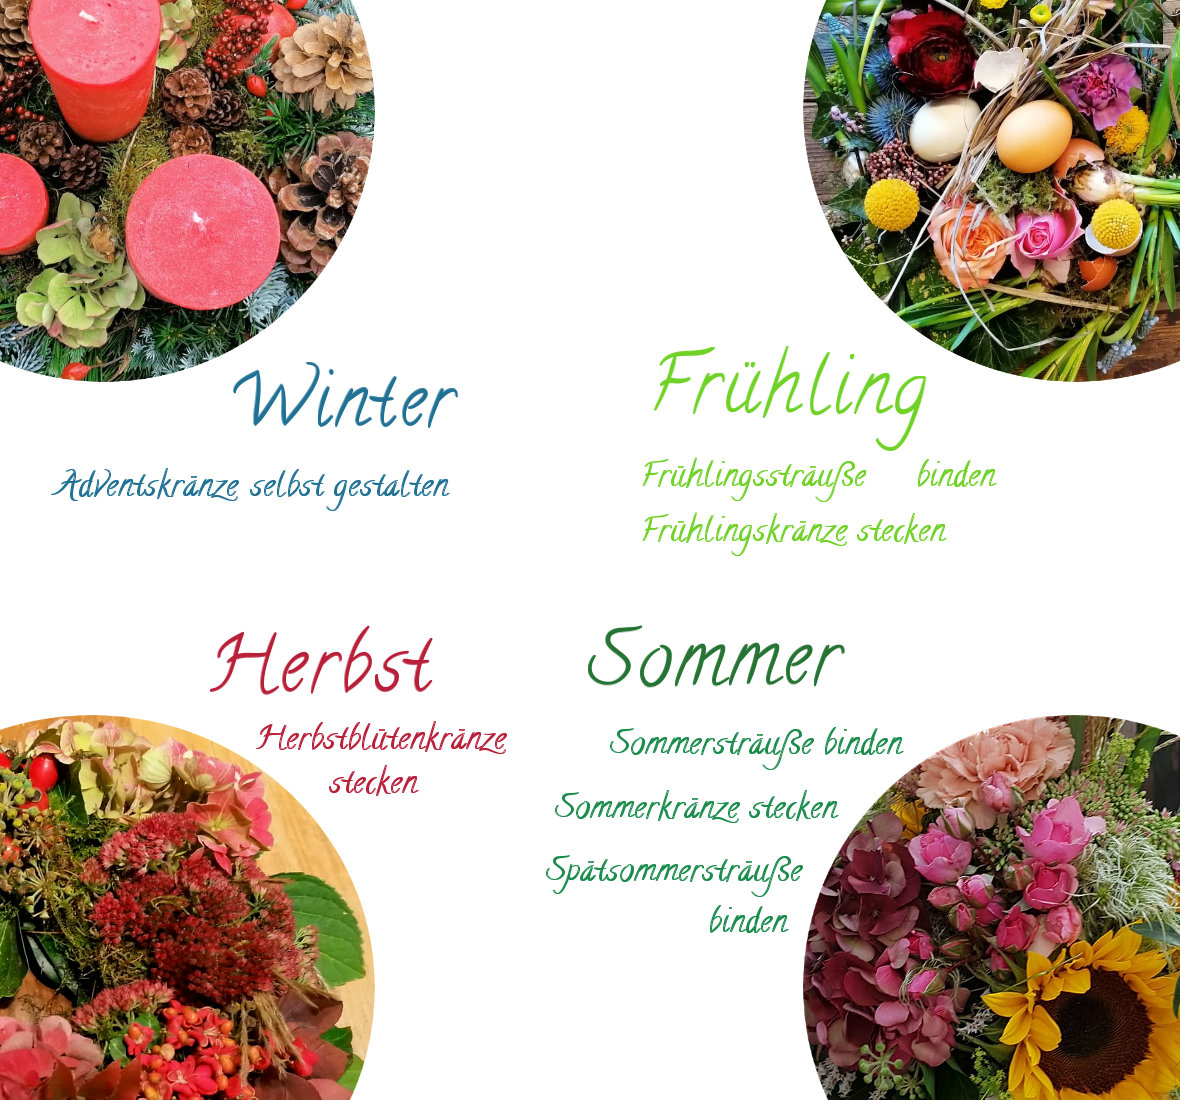 Floristik-Workshops in der Alten Gärtnerei Kersten 2022